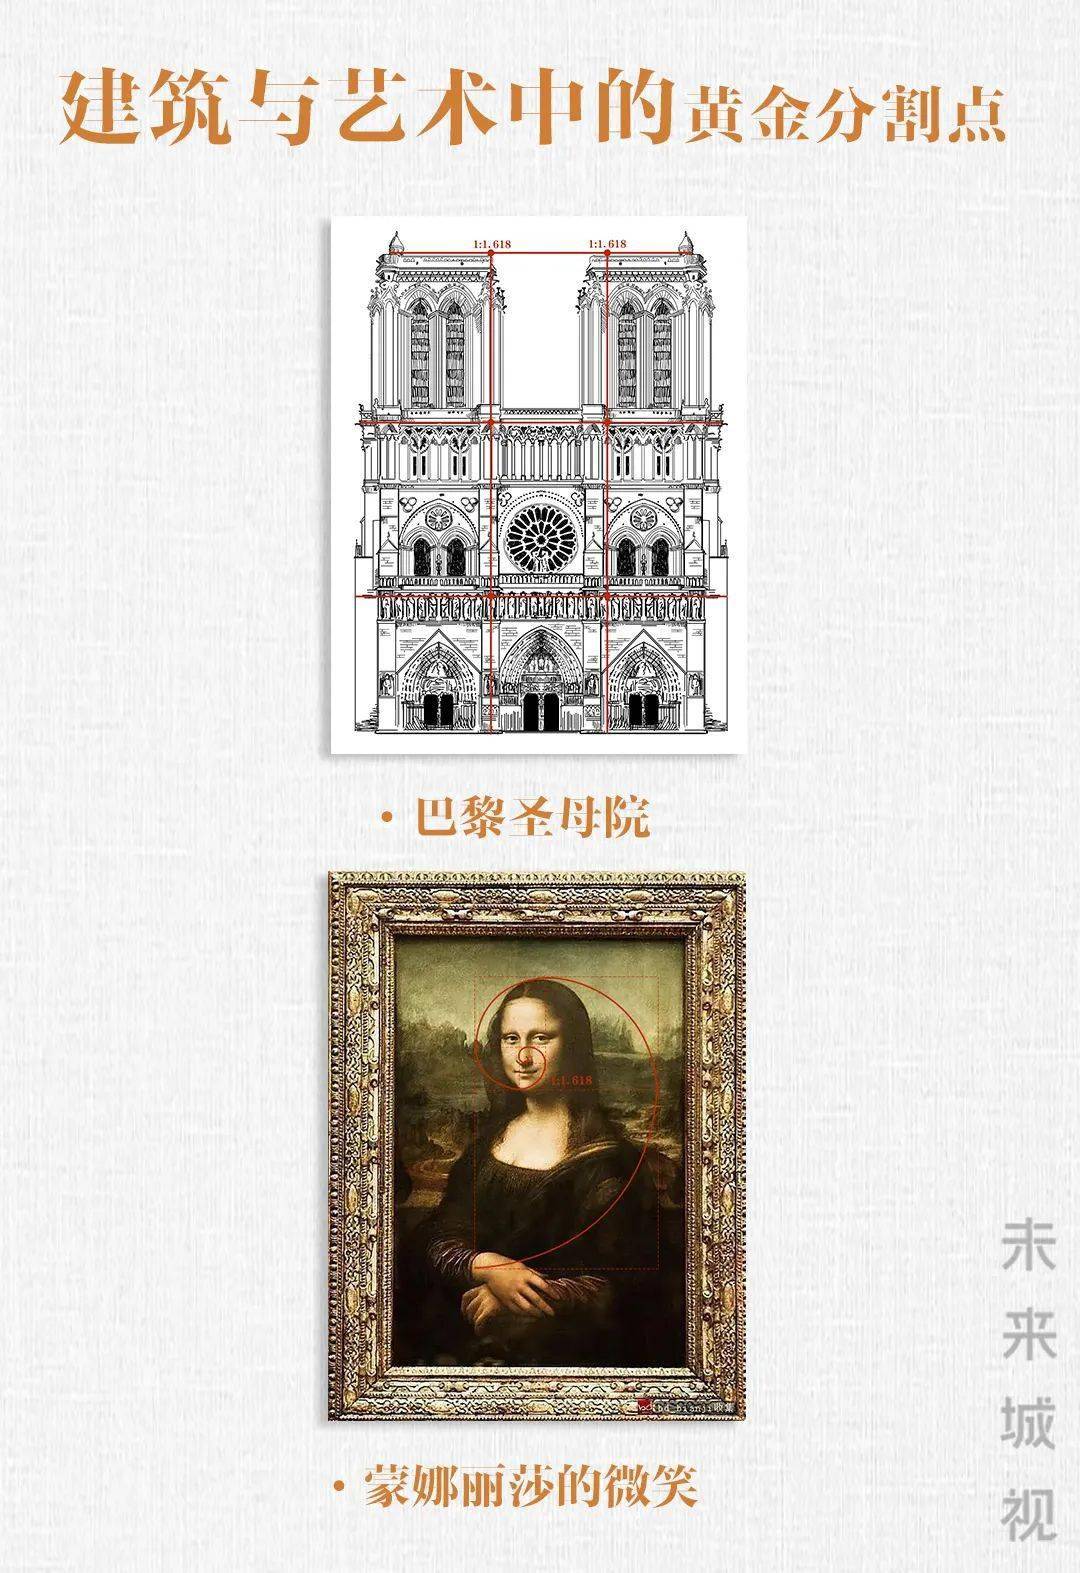 巴黎圣母院黄金分割图图片